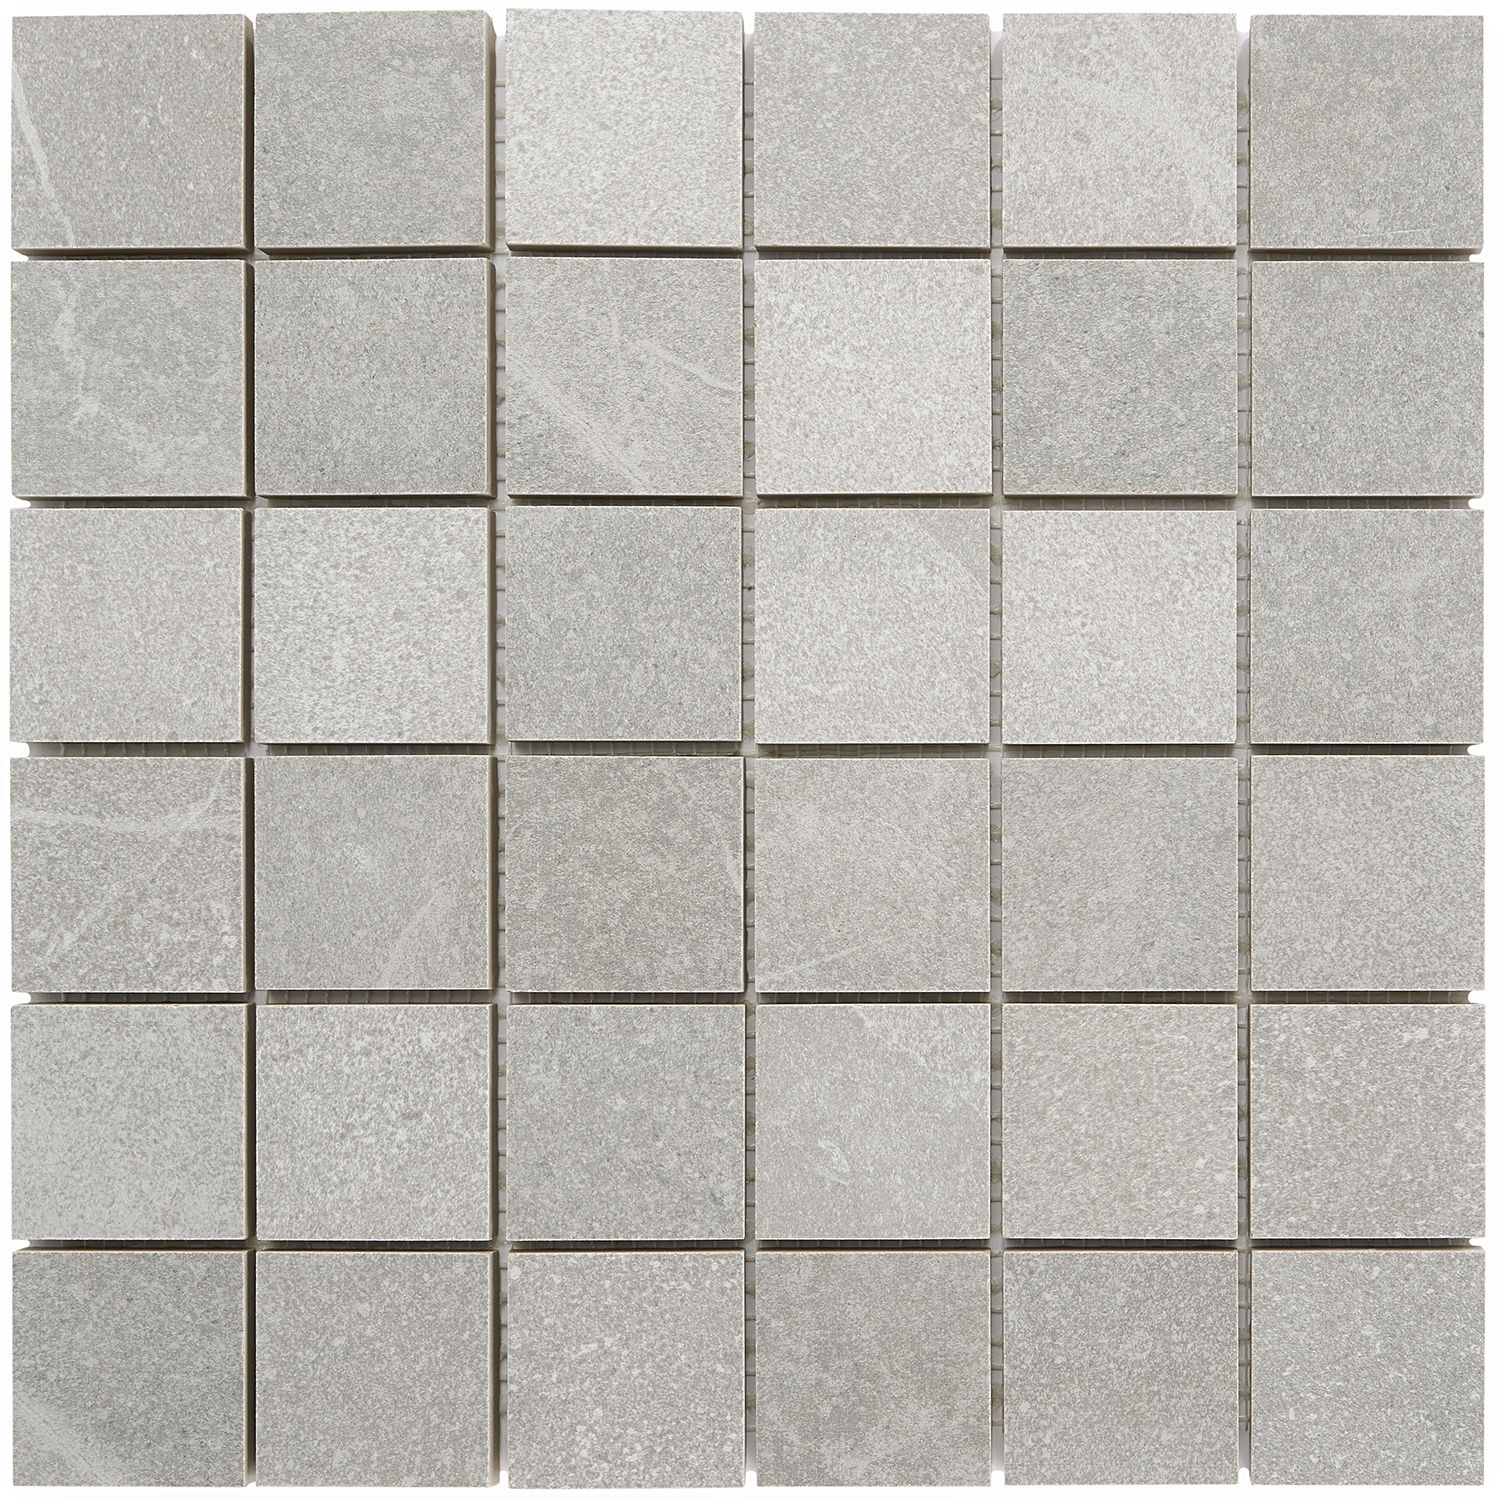 gray mosaic tile for shower floor